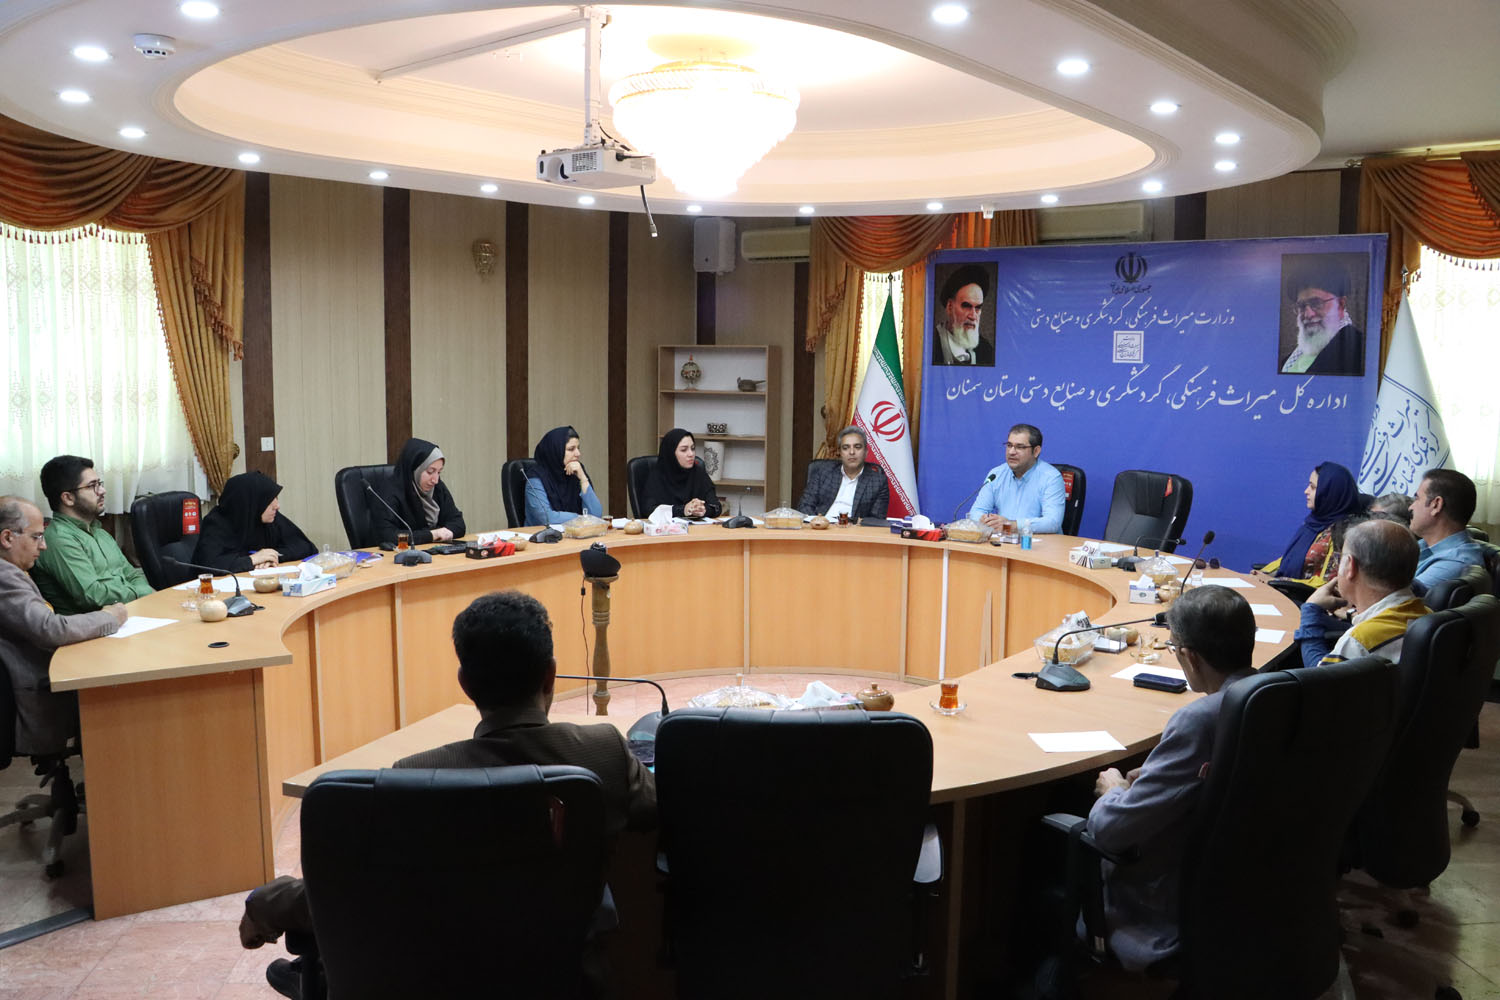 برگزاری نشست تخصصی بررسی راهکارهای رشد تولید سفال و سرامیک استان سمنان